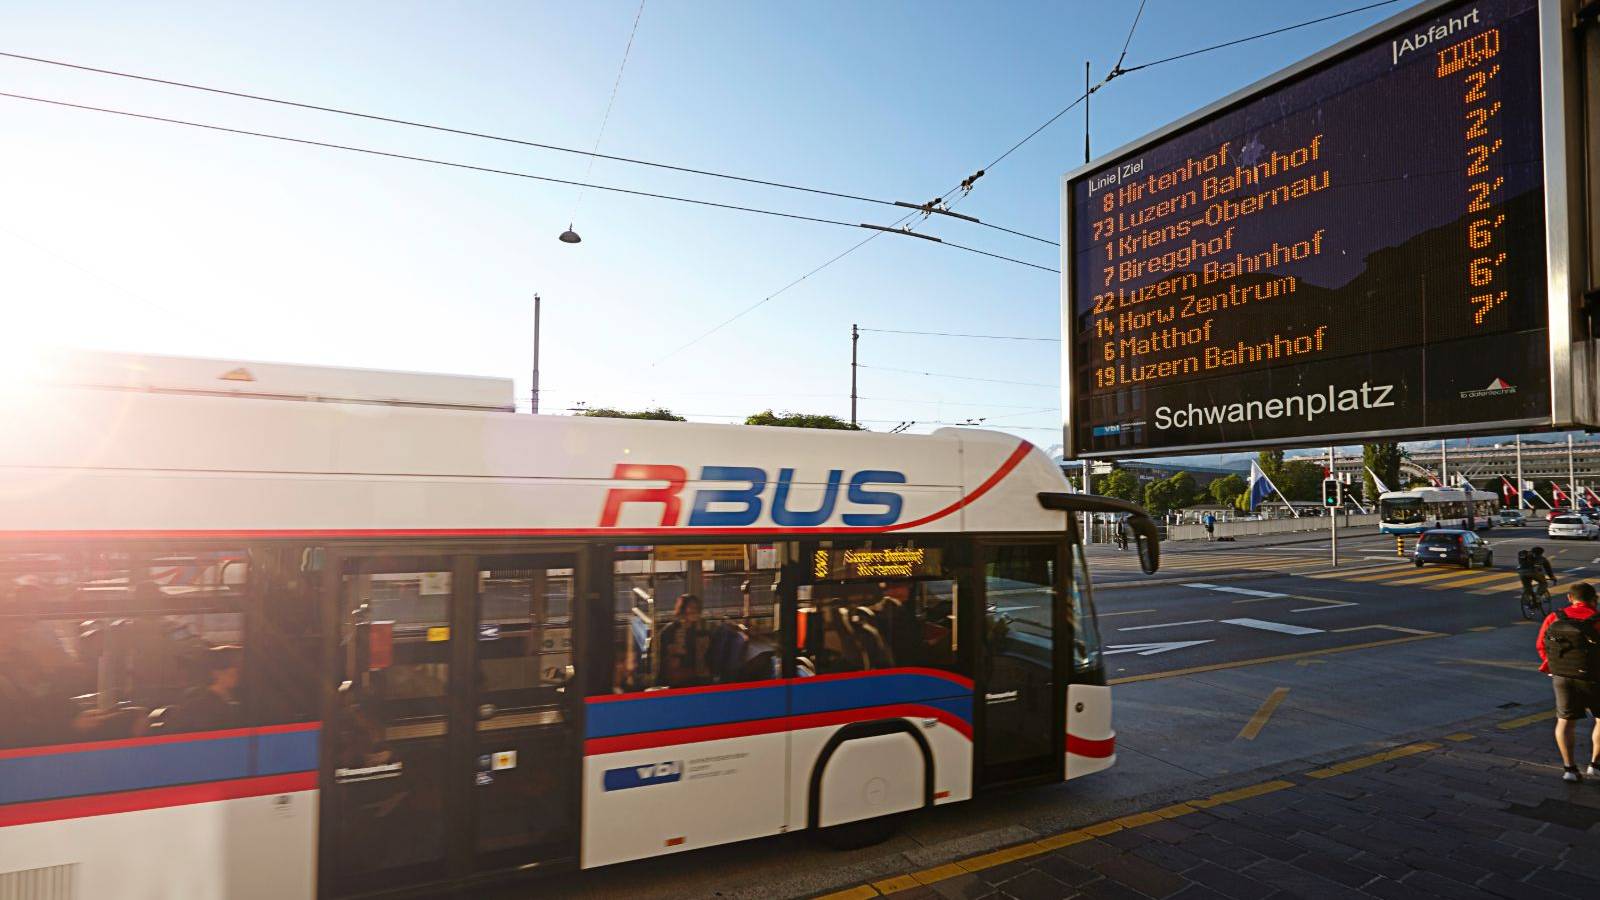 RBus Öffentlicher Verkehr Schwanenplatz ÖV